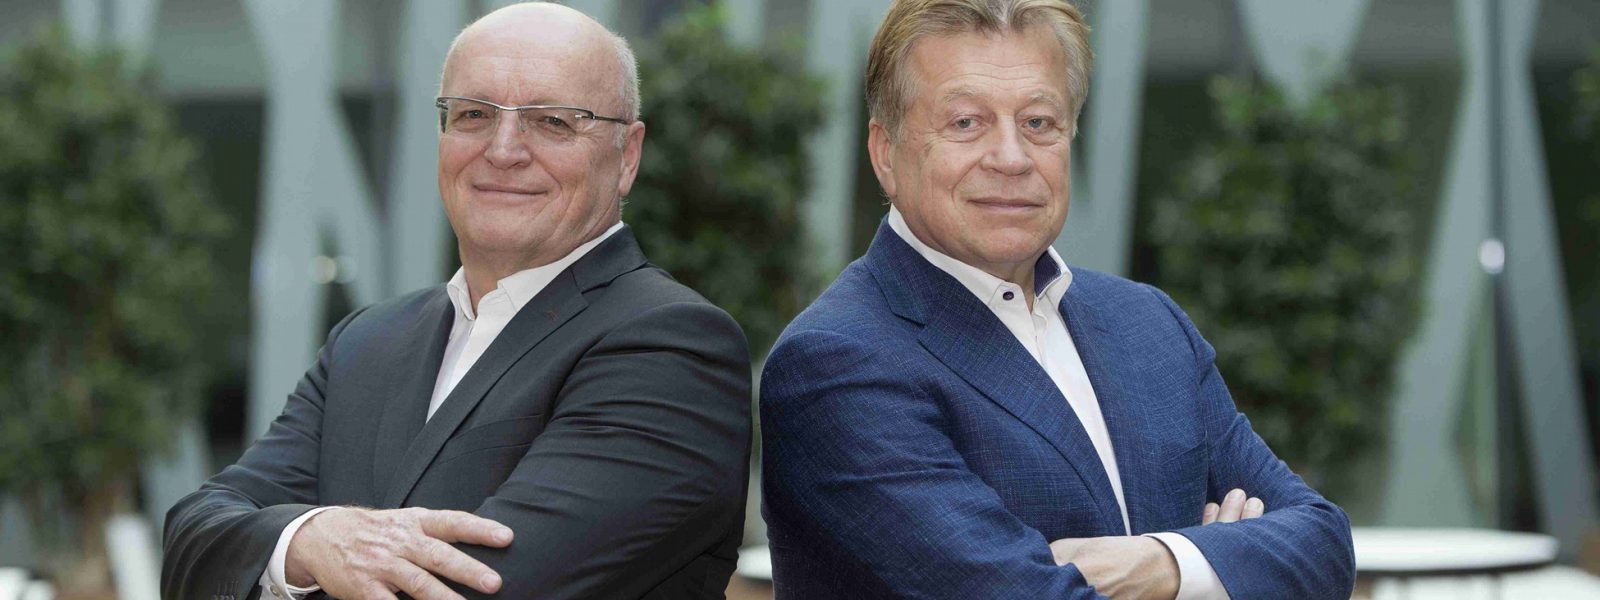 Der Vorstand Wemulux: Peter Weber und Manfred Müller